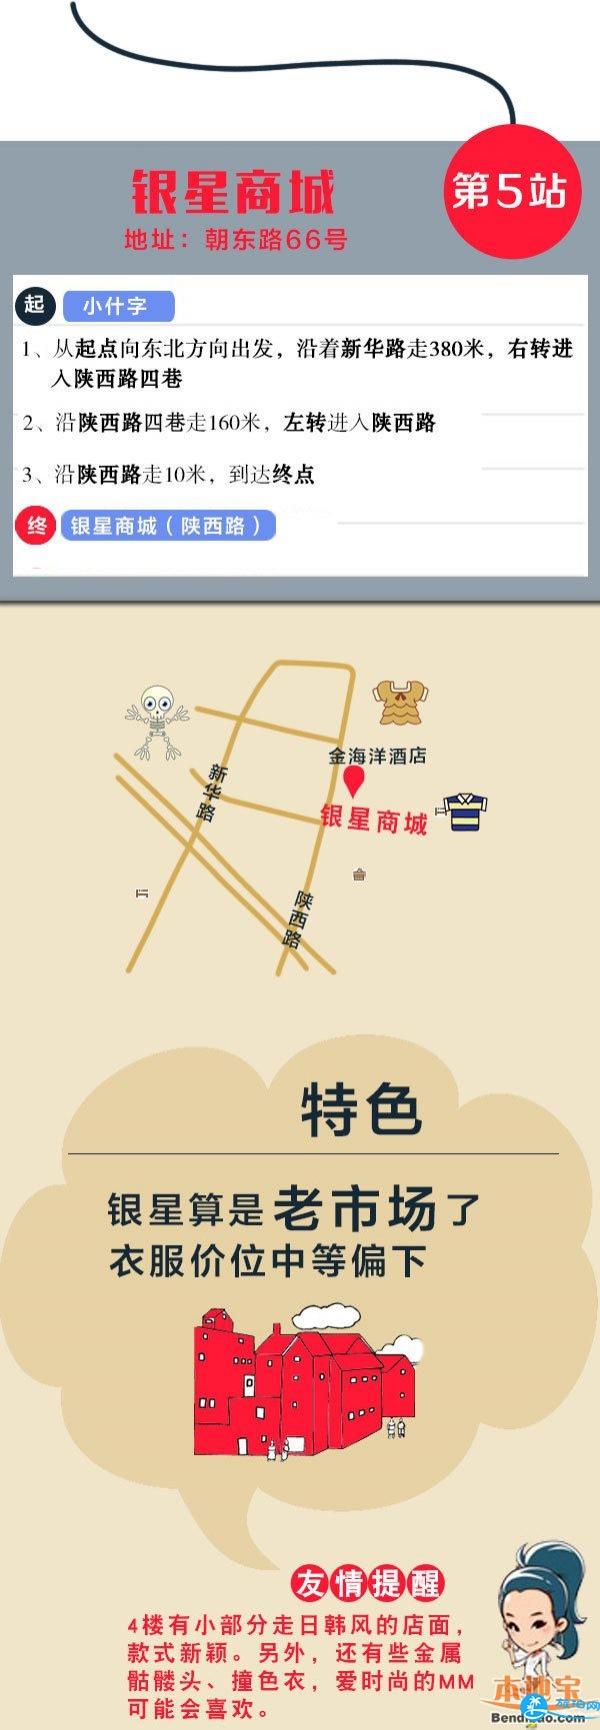 重庆市内好玩的地方推荐